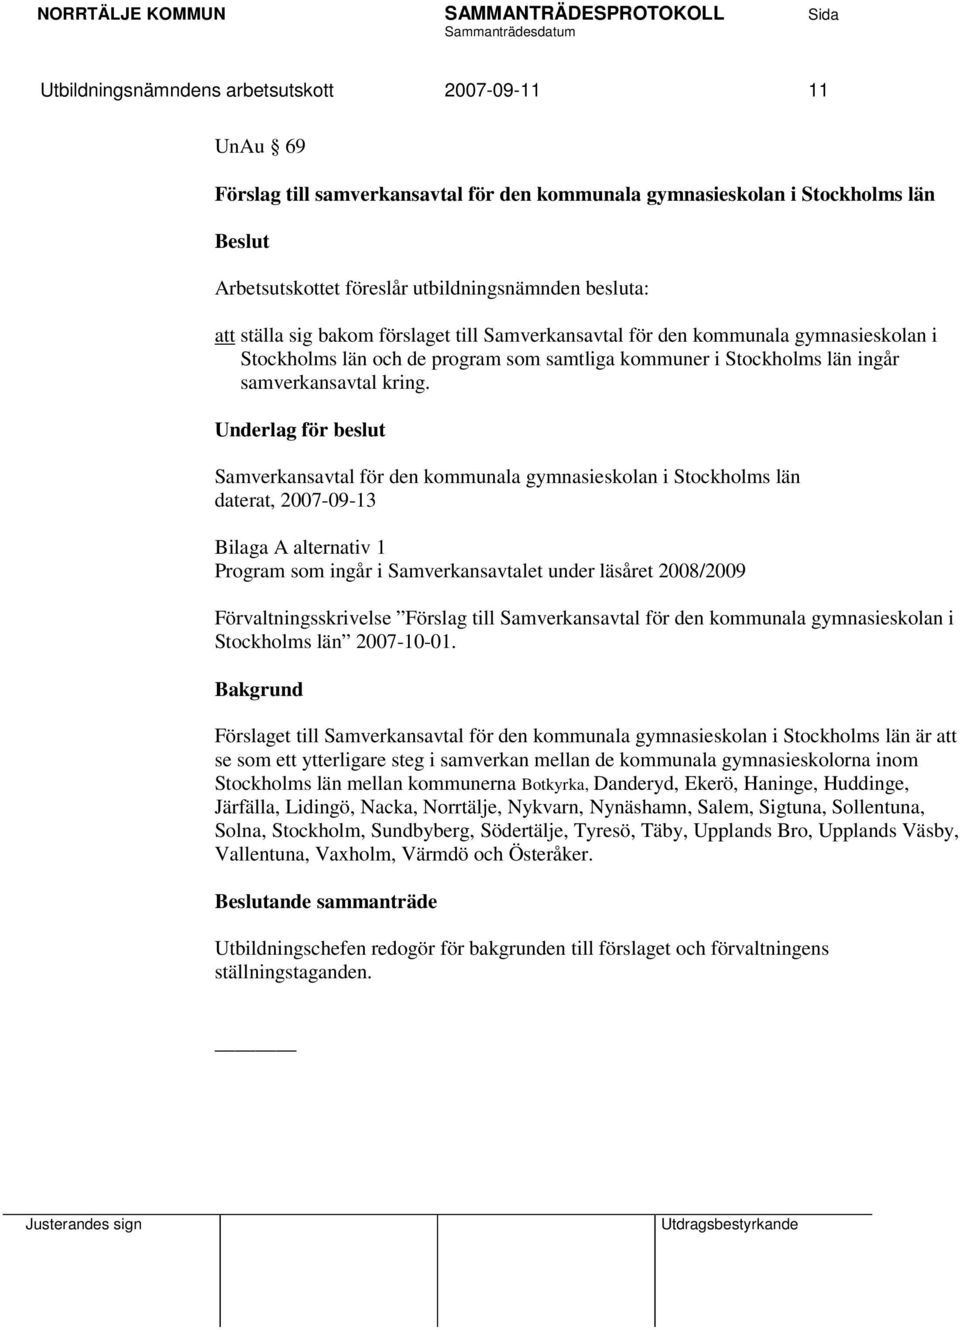 Underlag för beslut Samverkansavtal för den kommunala gymnasieskolan i Stockholms län daterat, 2007-09-13 Bilaga A alternativ 1 Program som ingår i Samverkansavtalet under läsåret 2008/2009